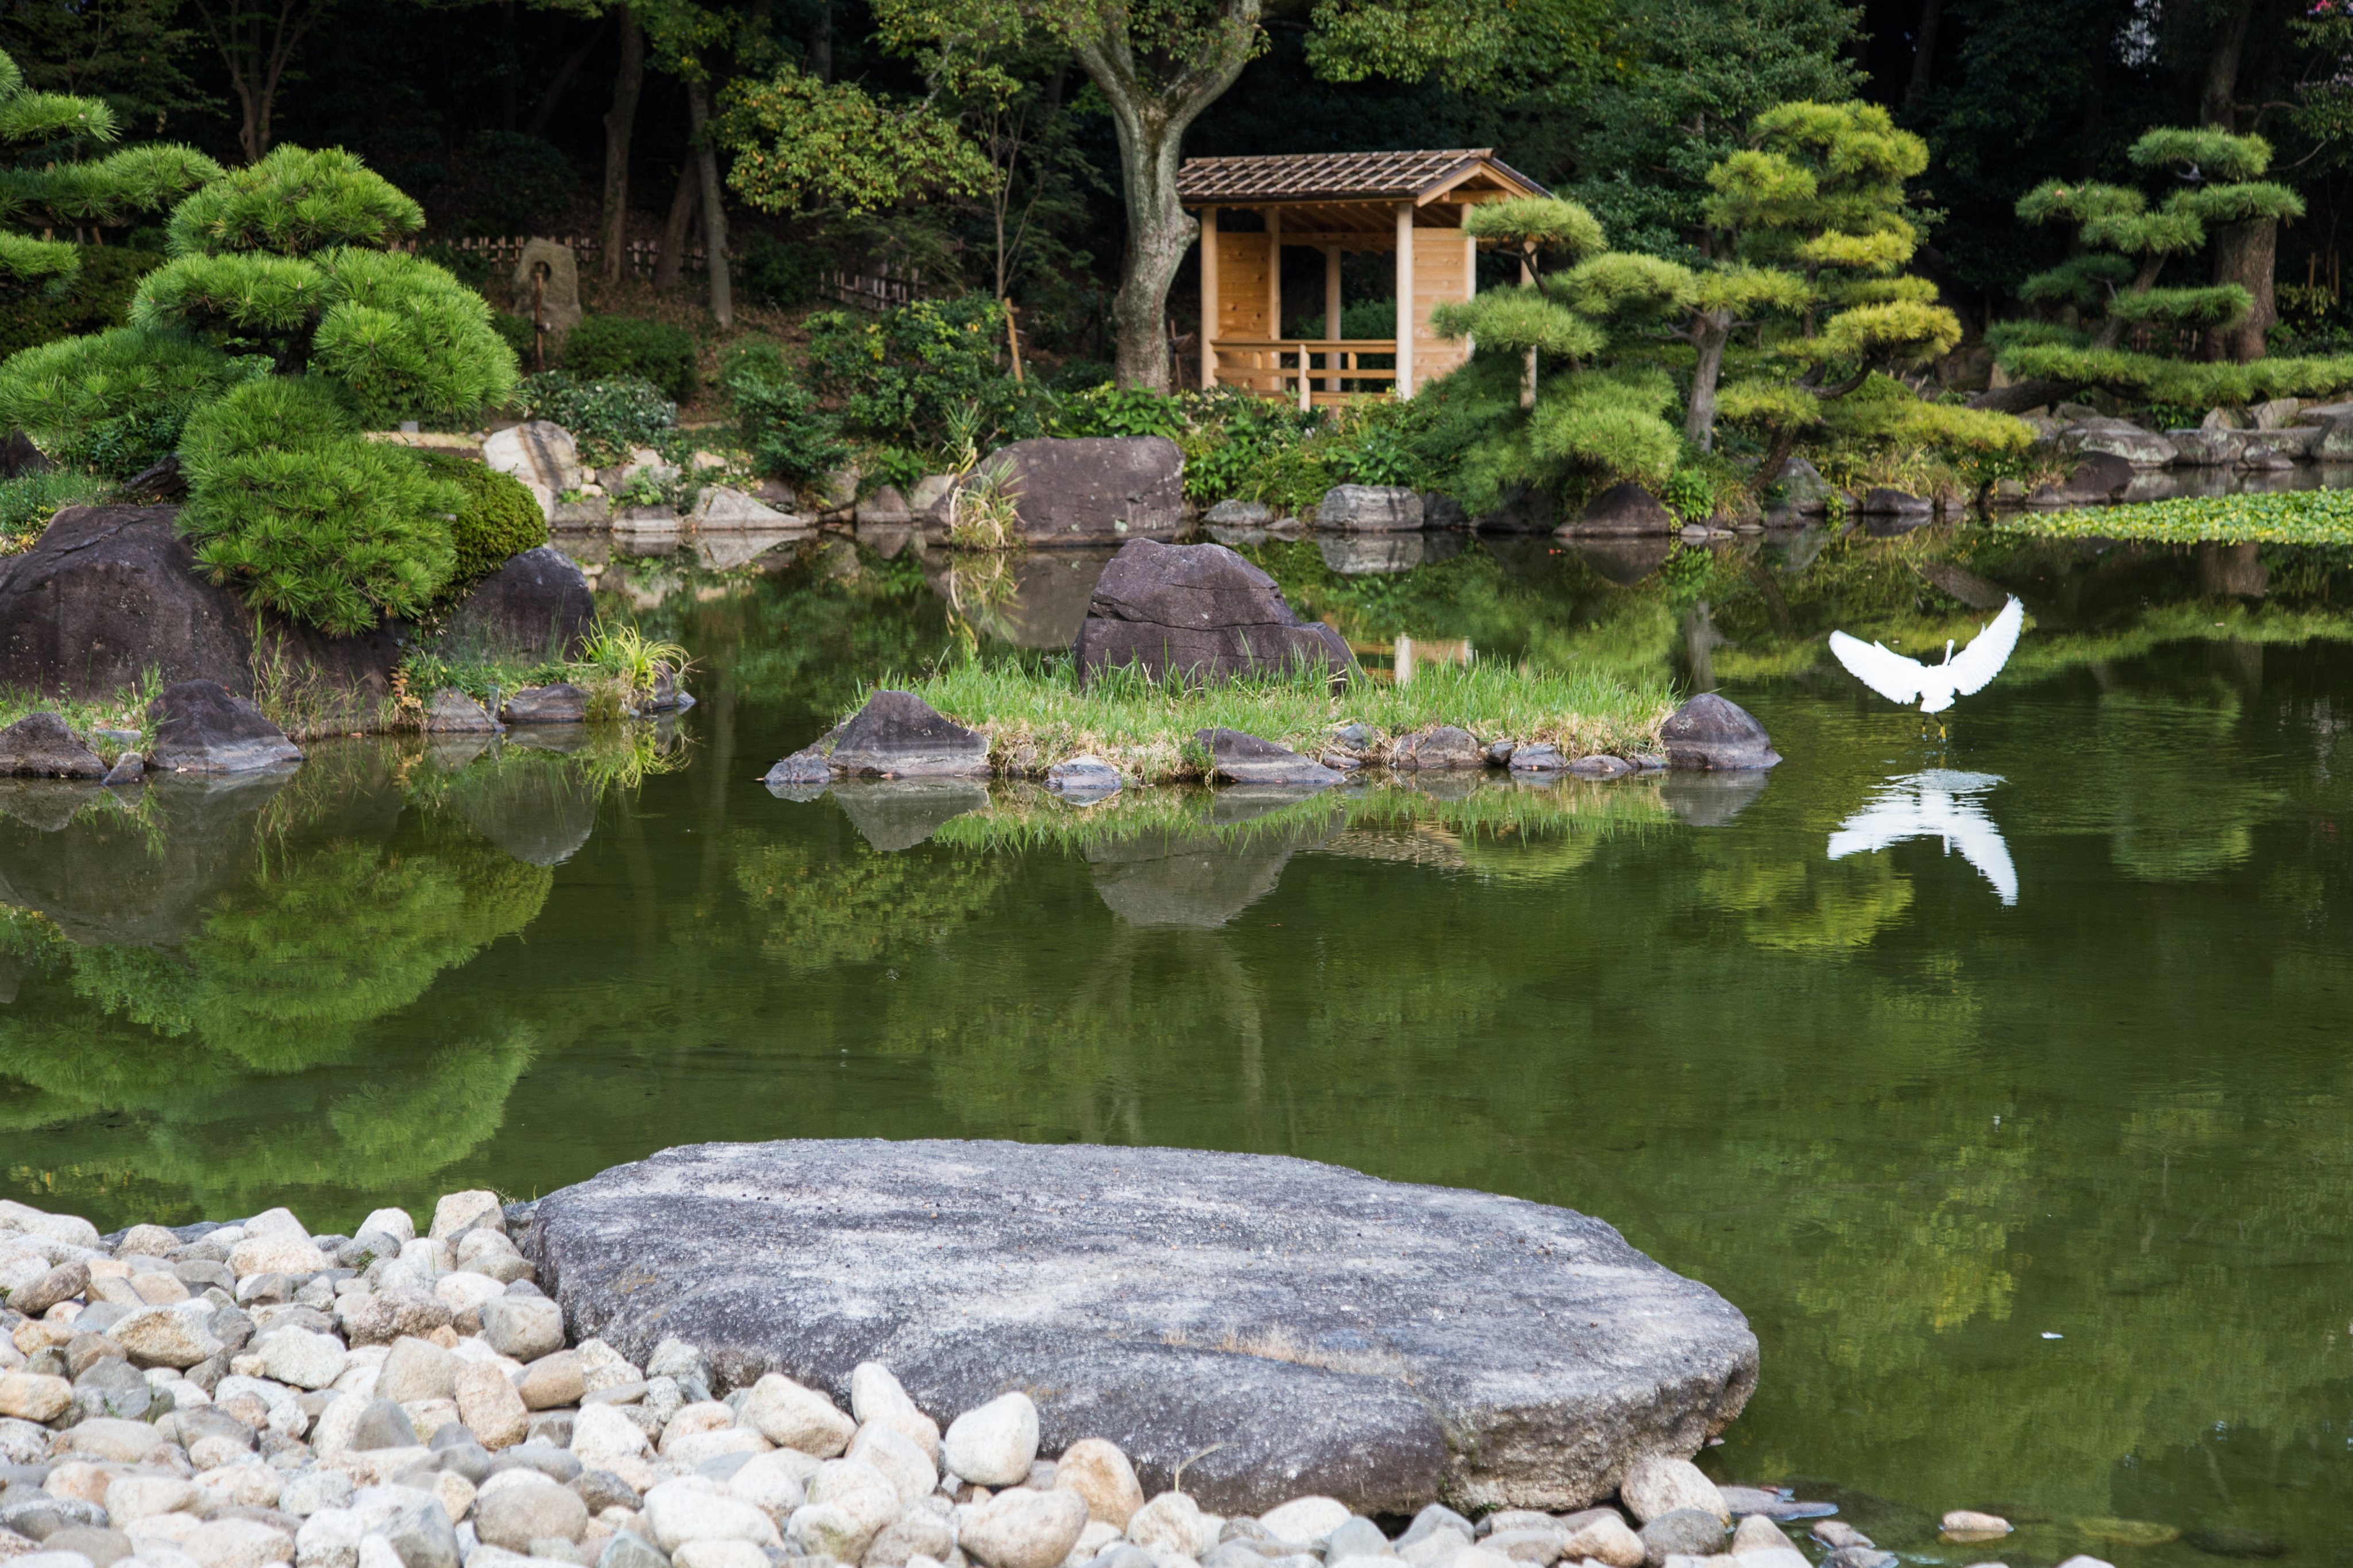 Keitaku Garden or Keitakuen is a chisen kaiyushiki pond